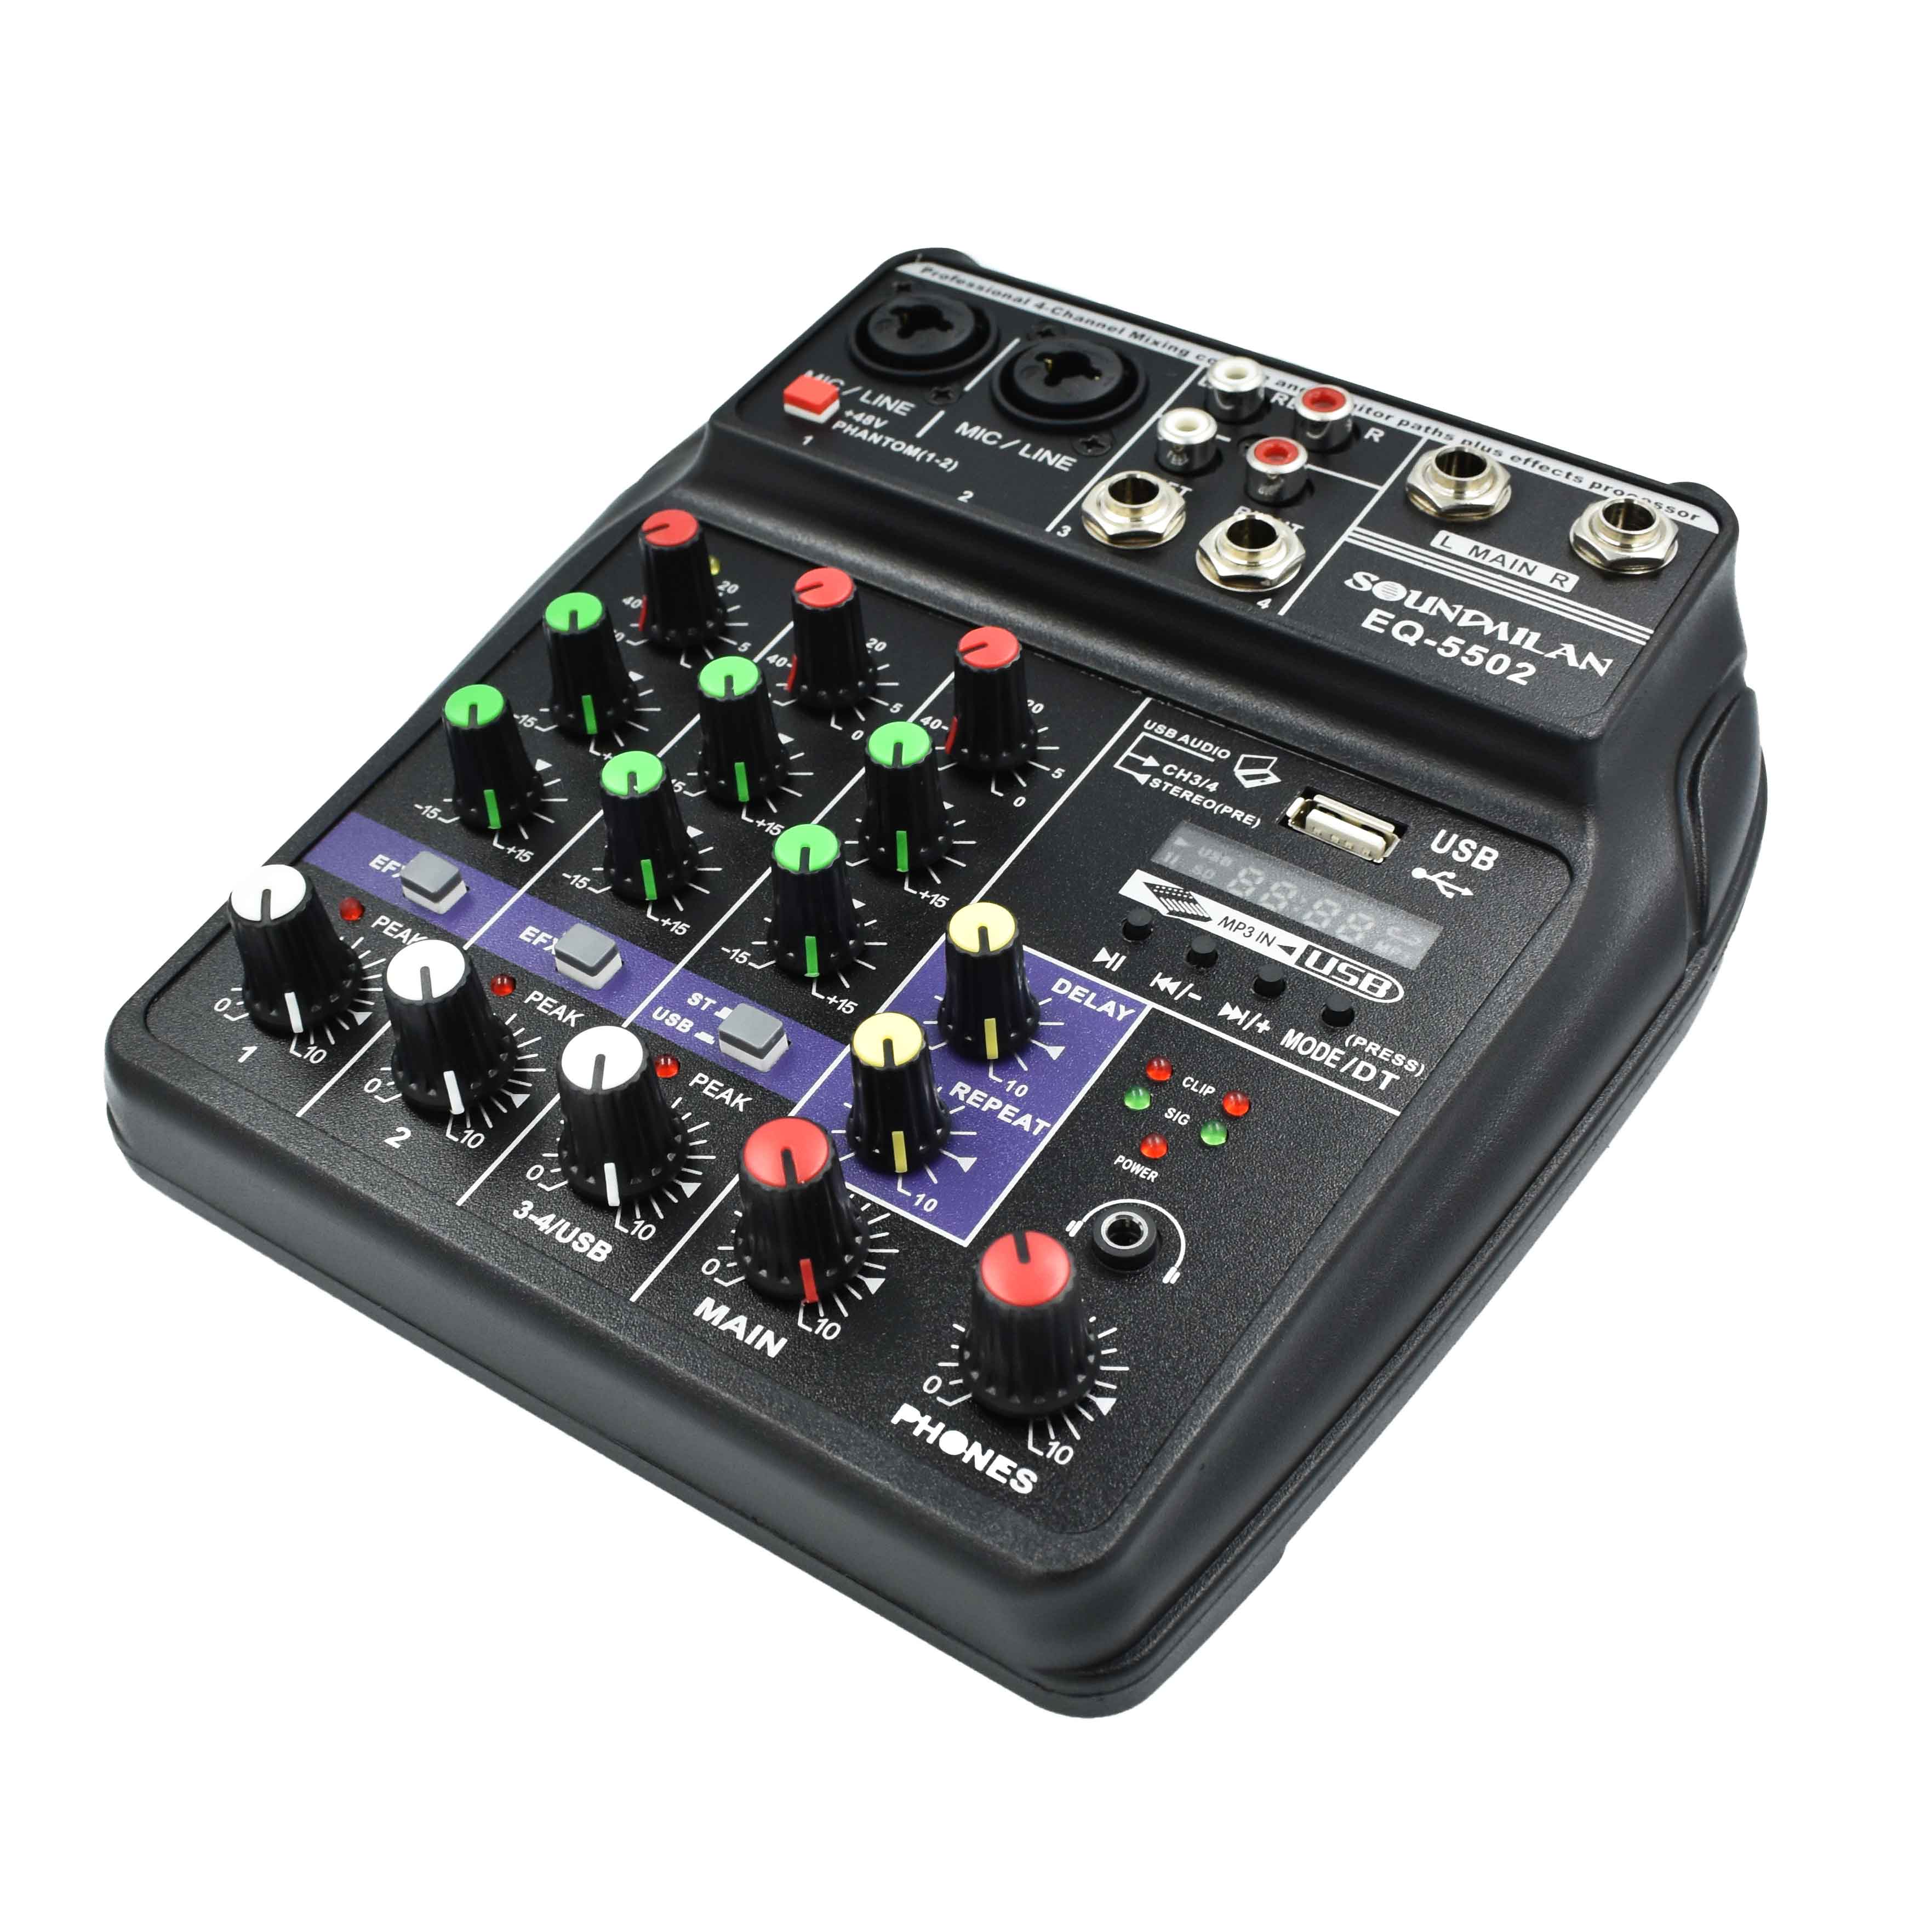 มิกเซอร์ Soundmilan รุ่น EQ-5502 4-Channal เครื่องเสียง บ้าน/รถยนต์ รองรับ บูลทูธ/USB  เสียงดี ใช้งานง่าย